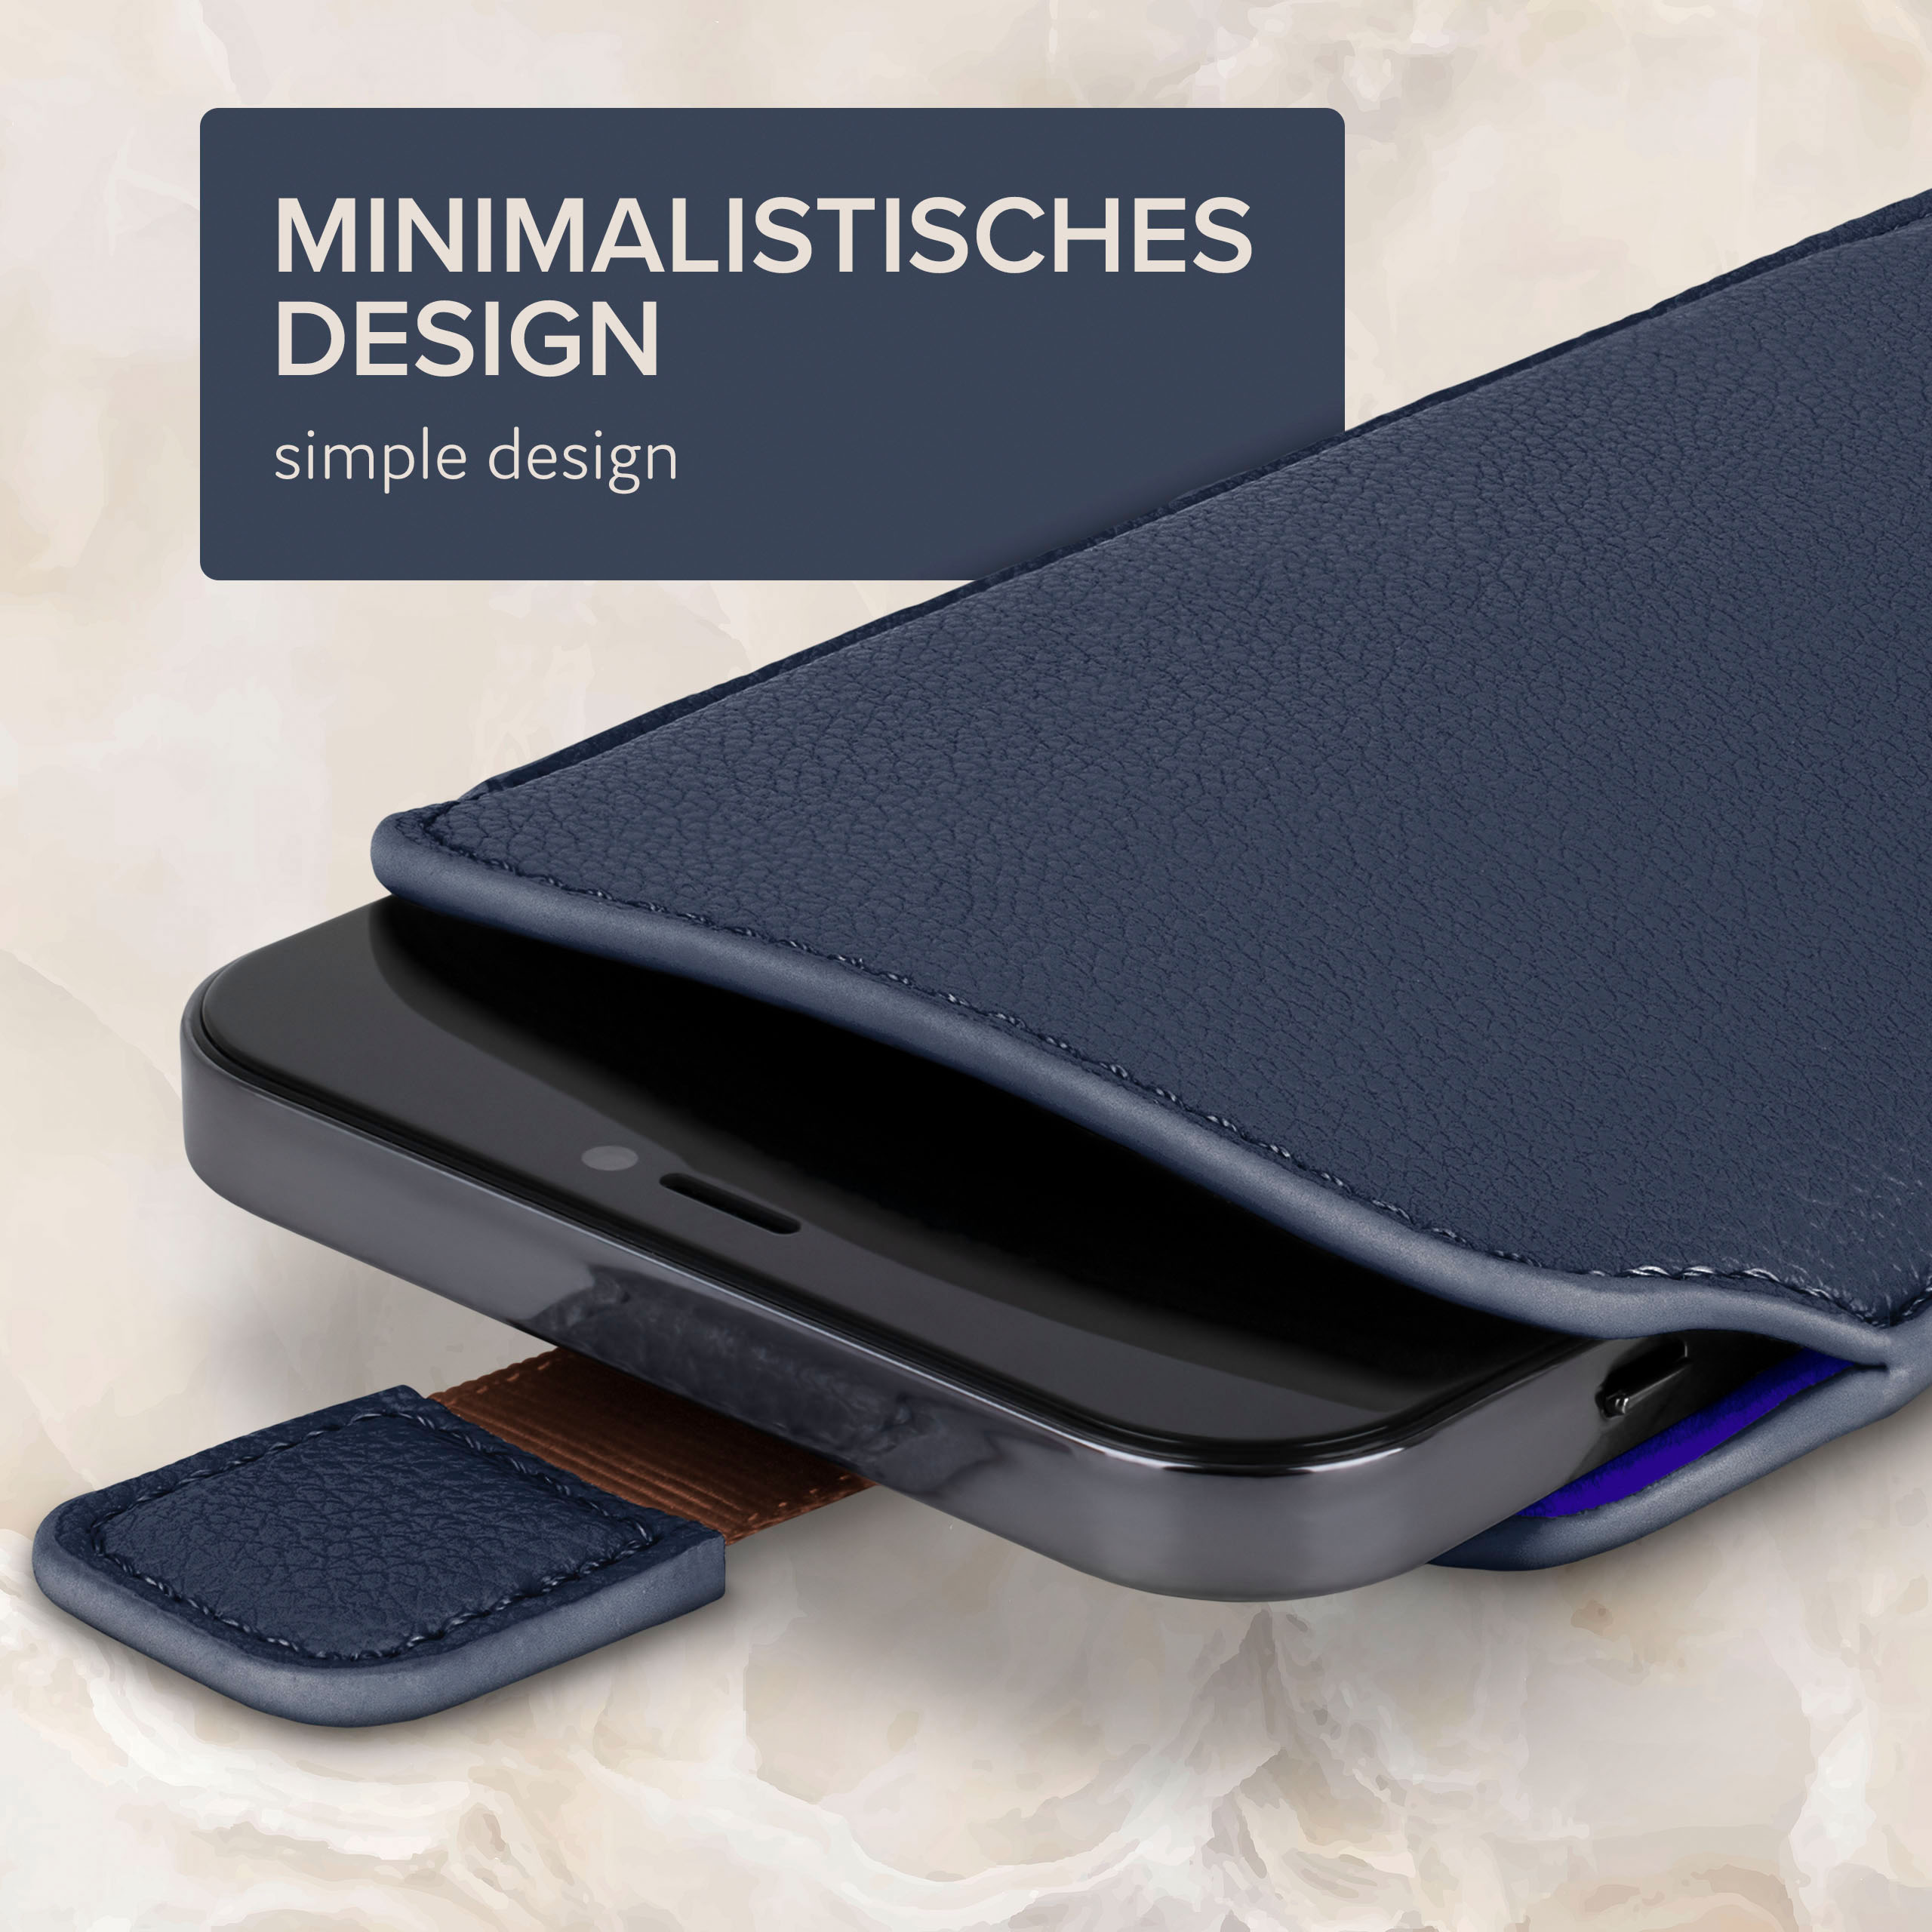 Zuglasche, Einsteckhülle Samsung, (2015), Dunkelblau A5 Cover, Full ONEFLOW mit Galaxy